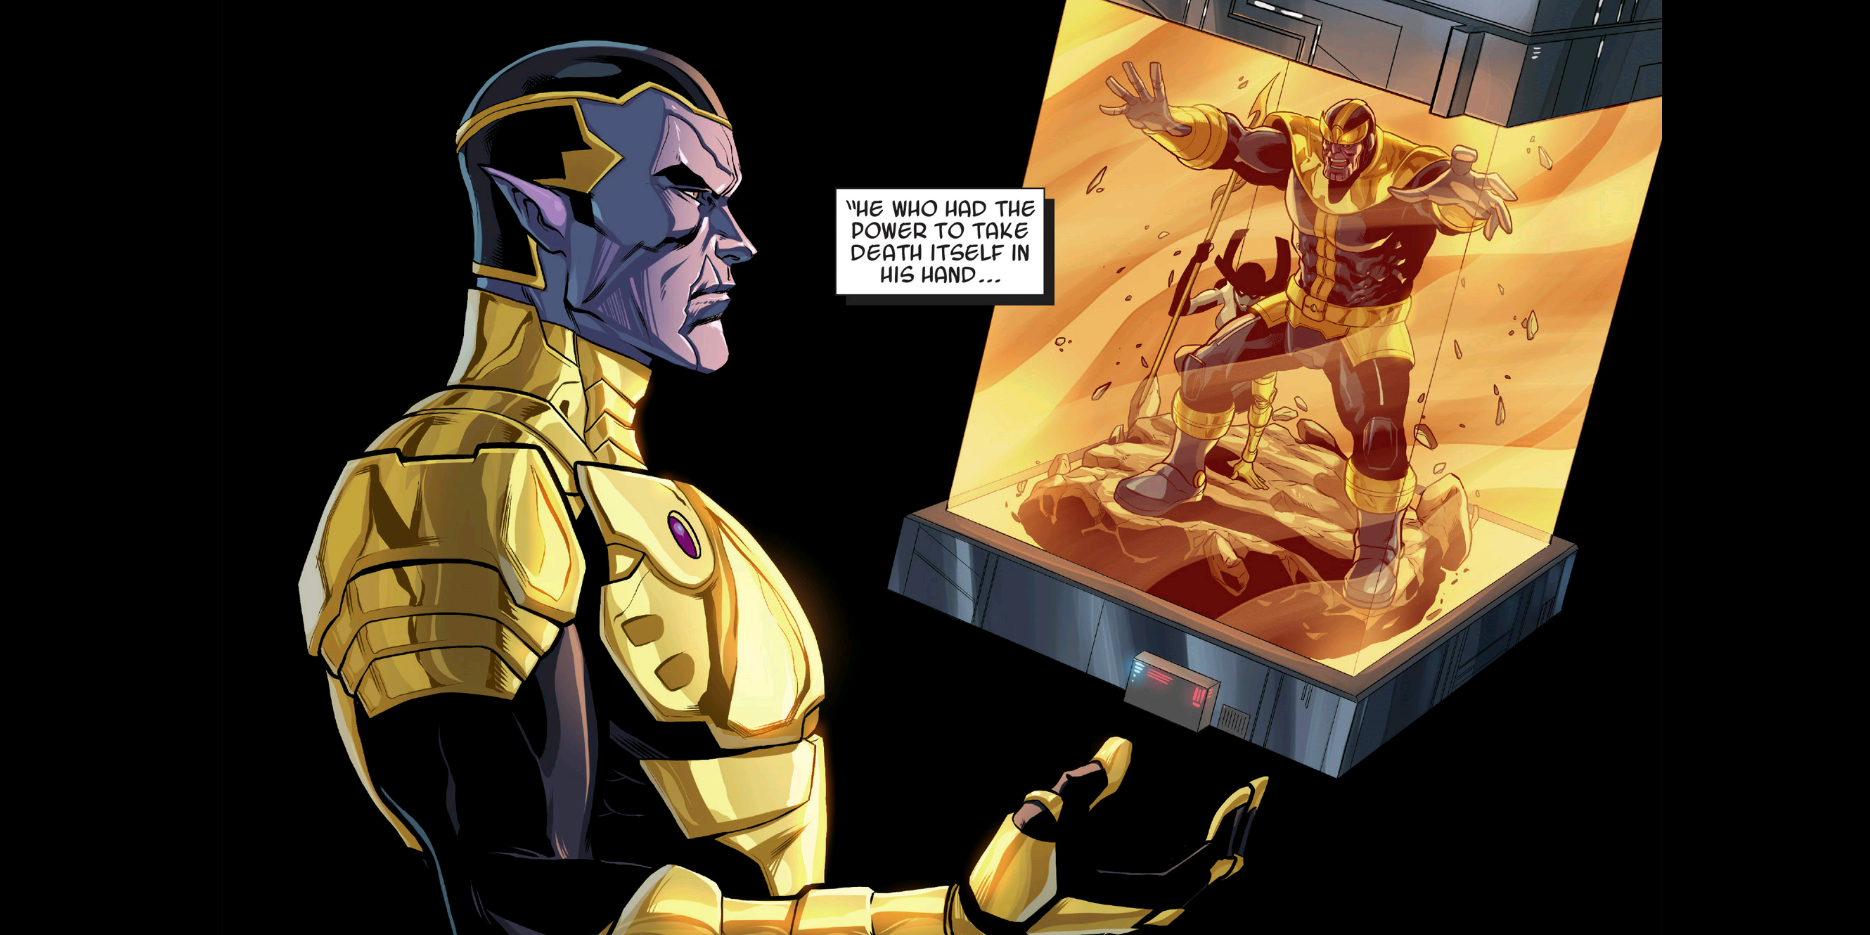 Thane and Thanos